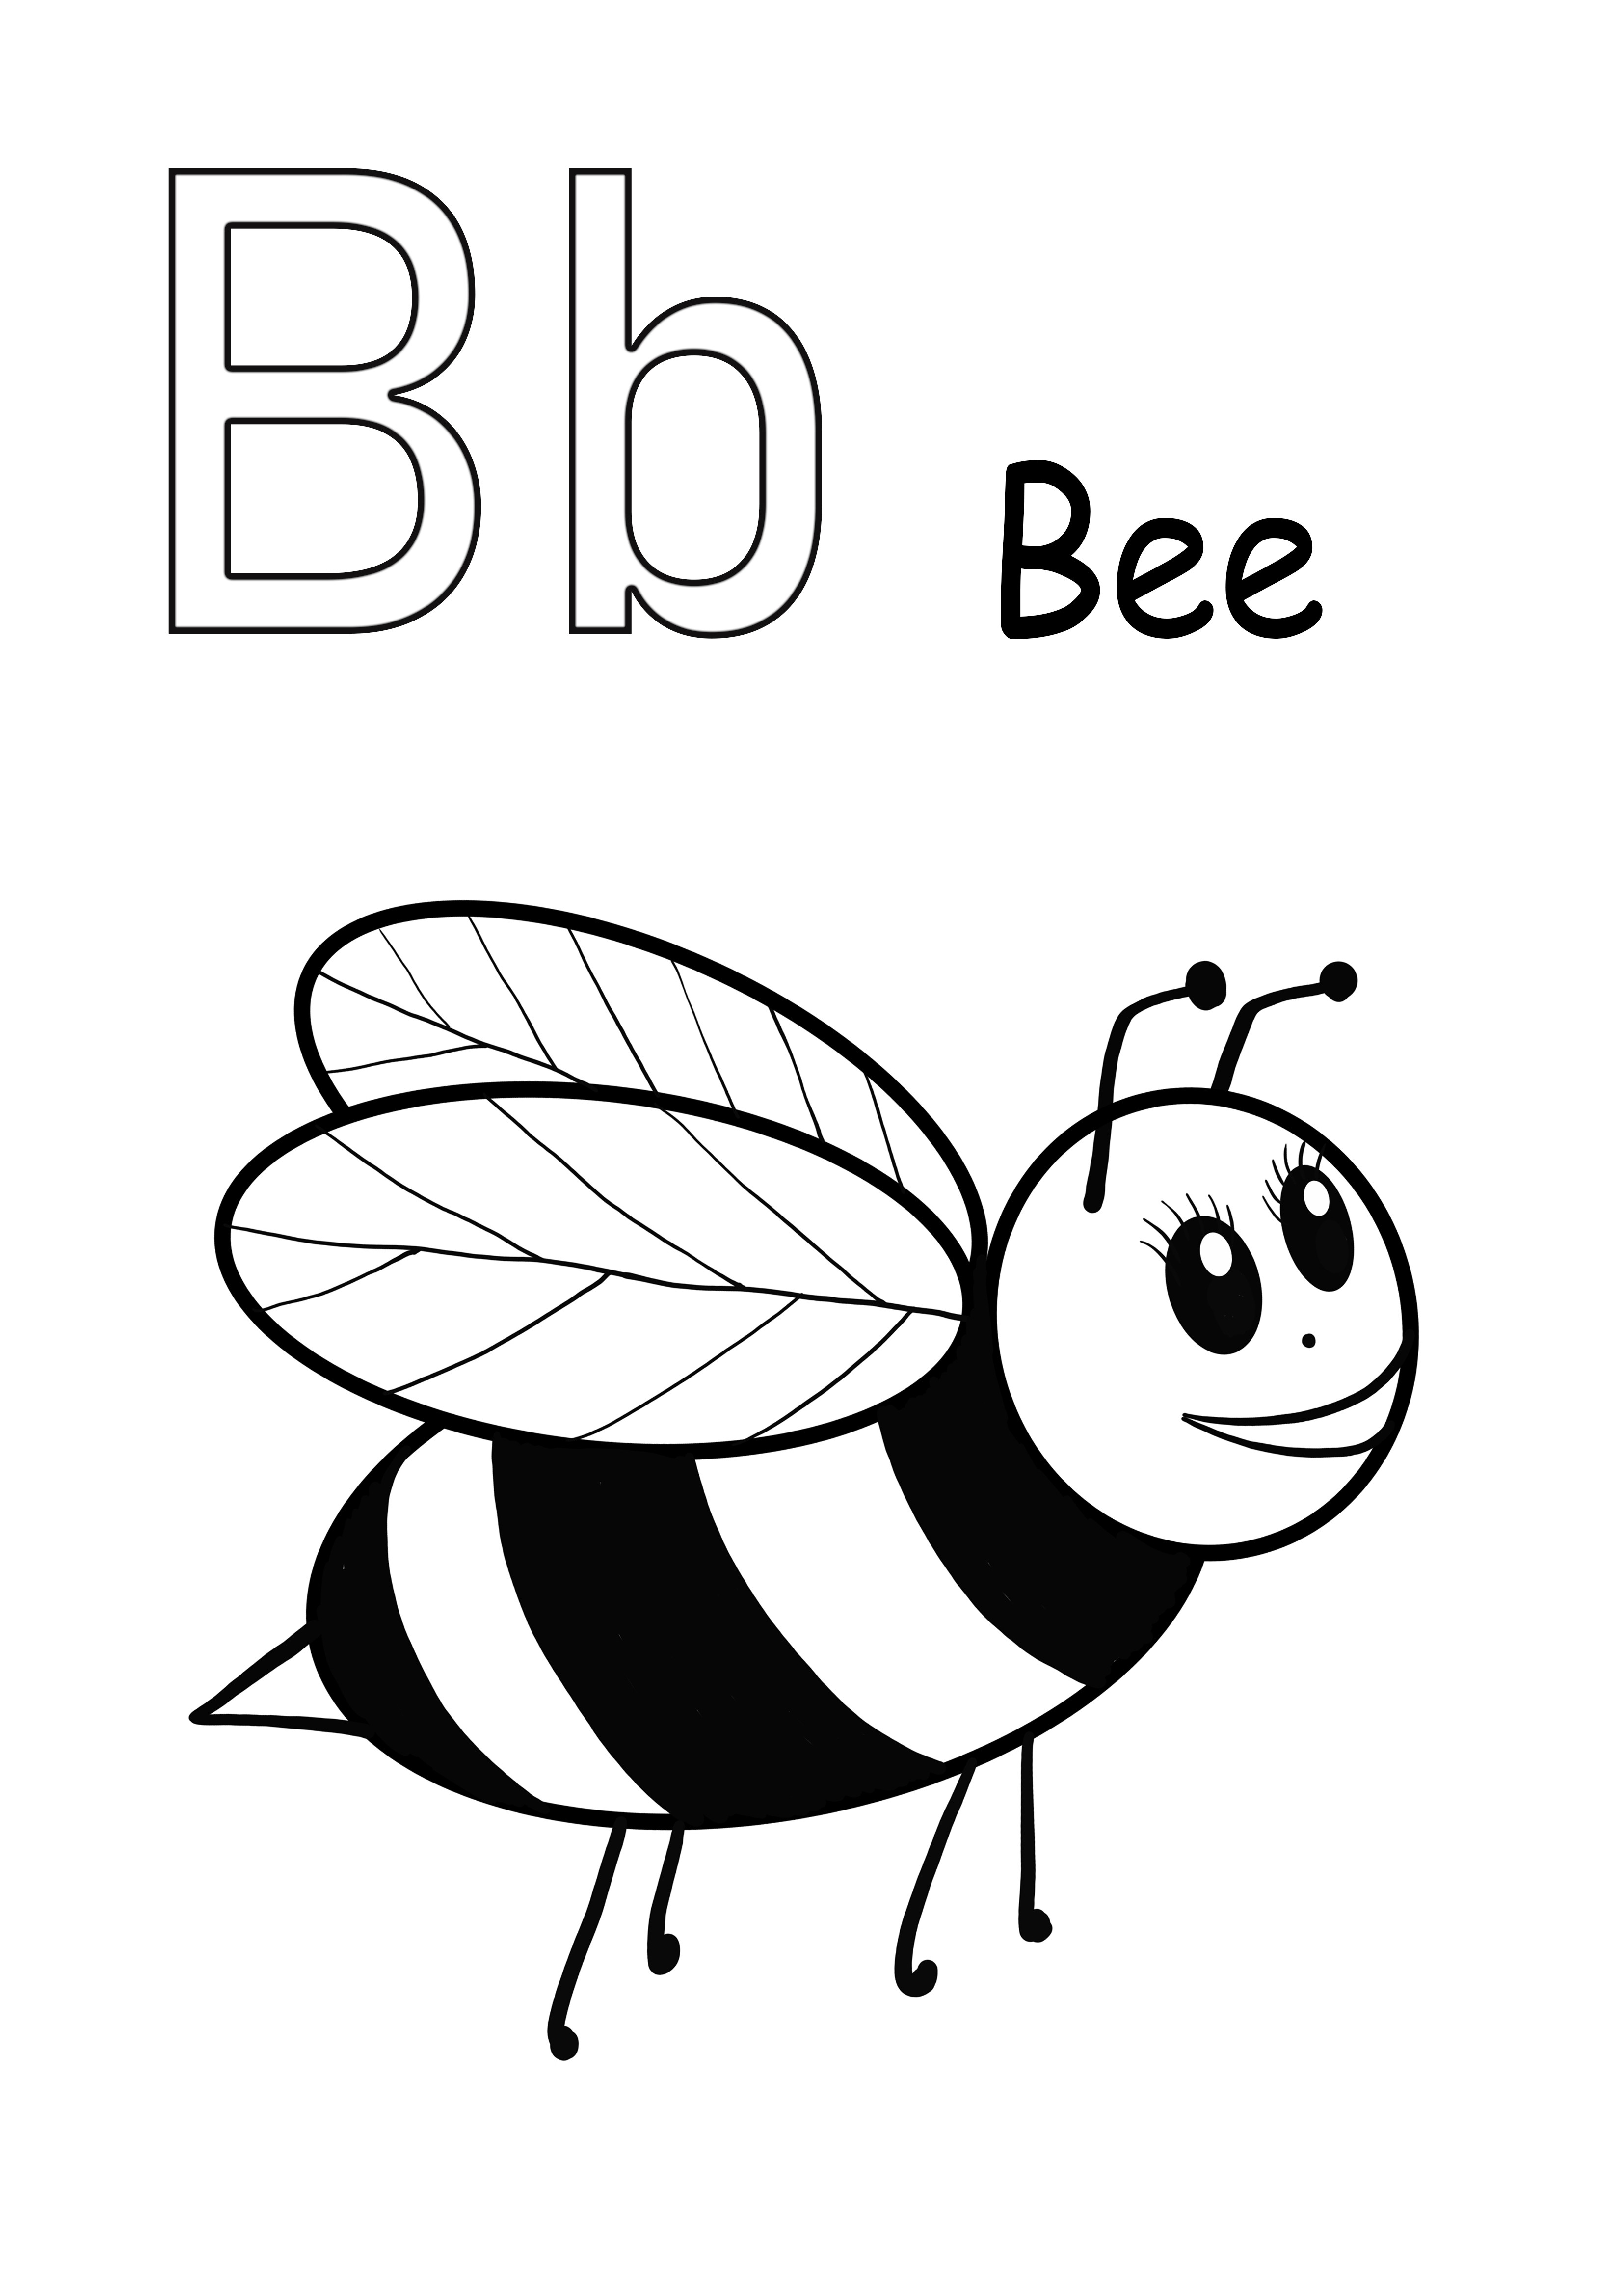 B harfi arı boyama ve ücretsiz indirme resmi içindir